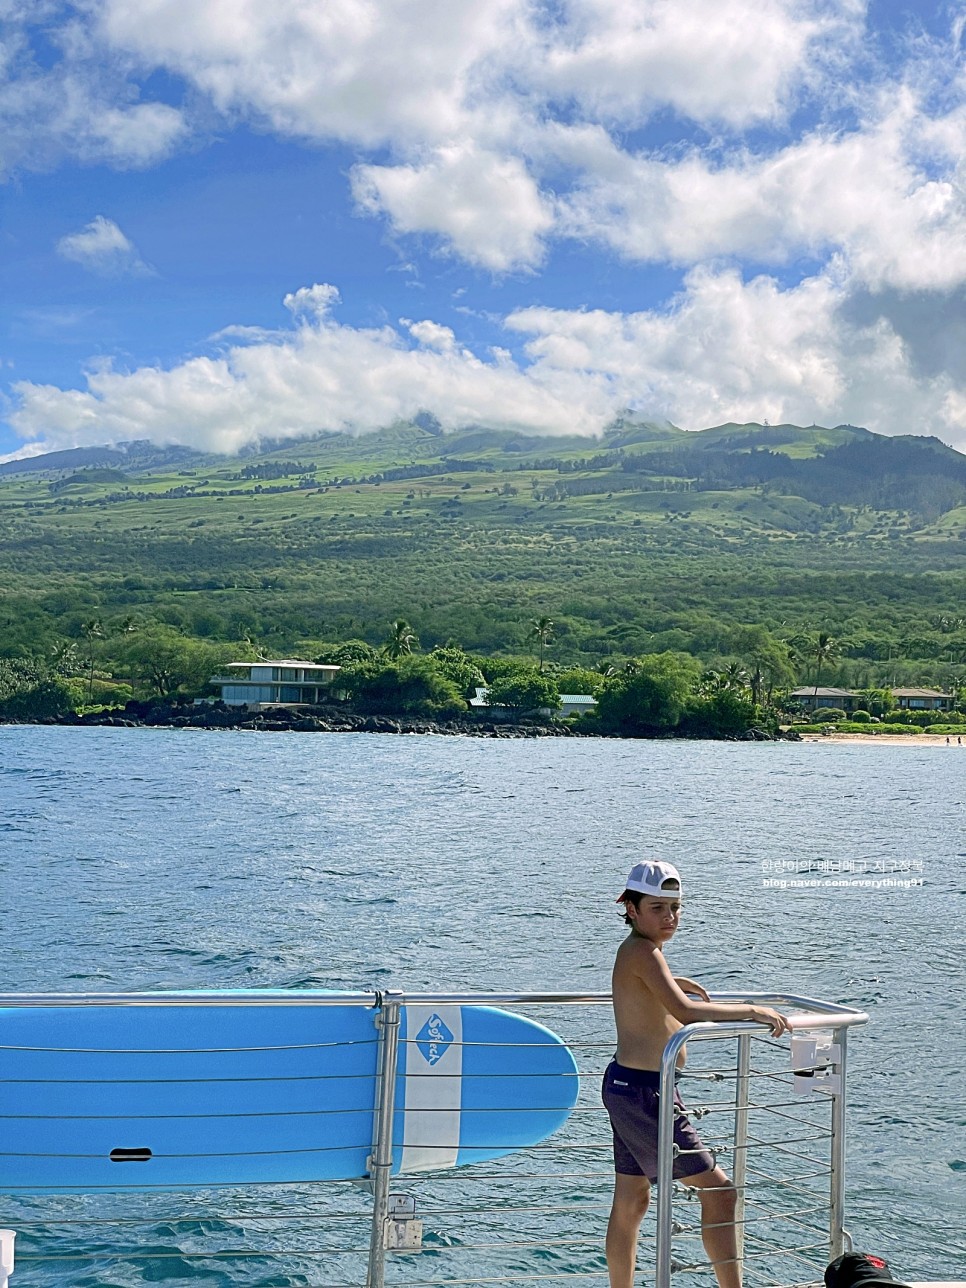 하와이 마우이 여행 몰로키니 섬 터틀타운 스노쿨링 요트 투어